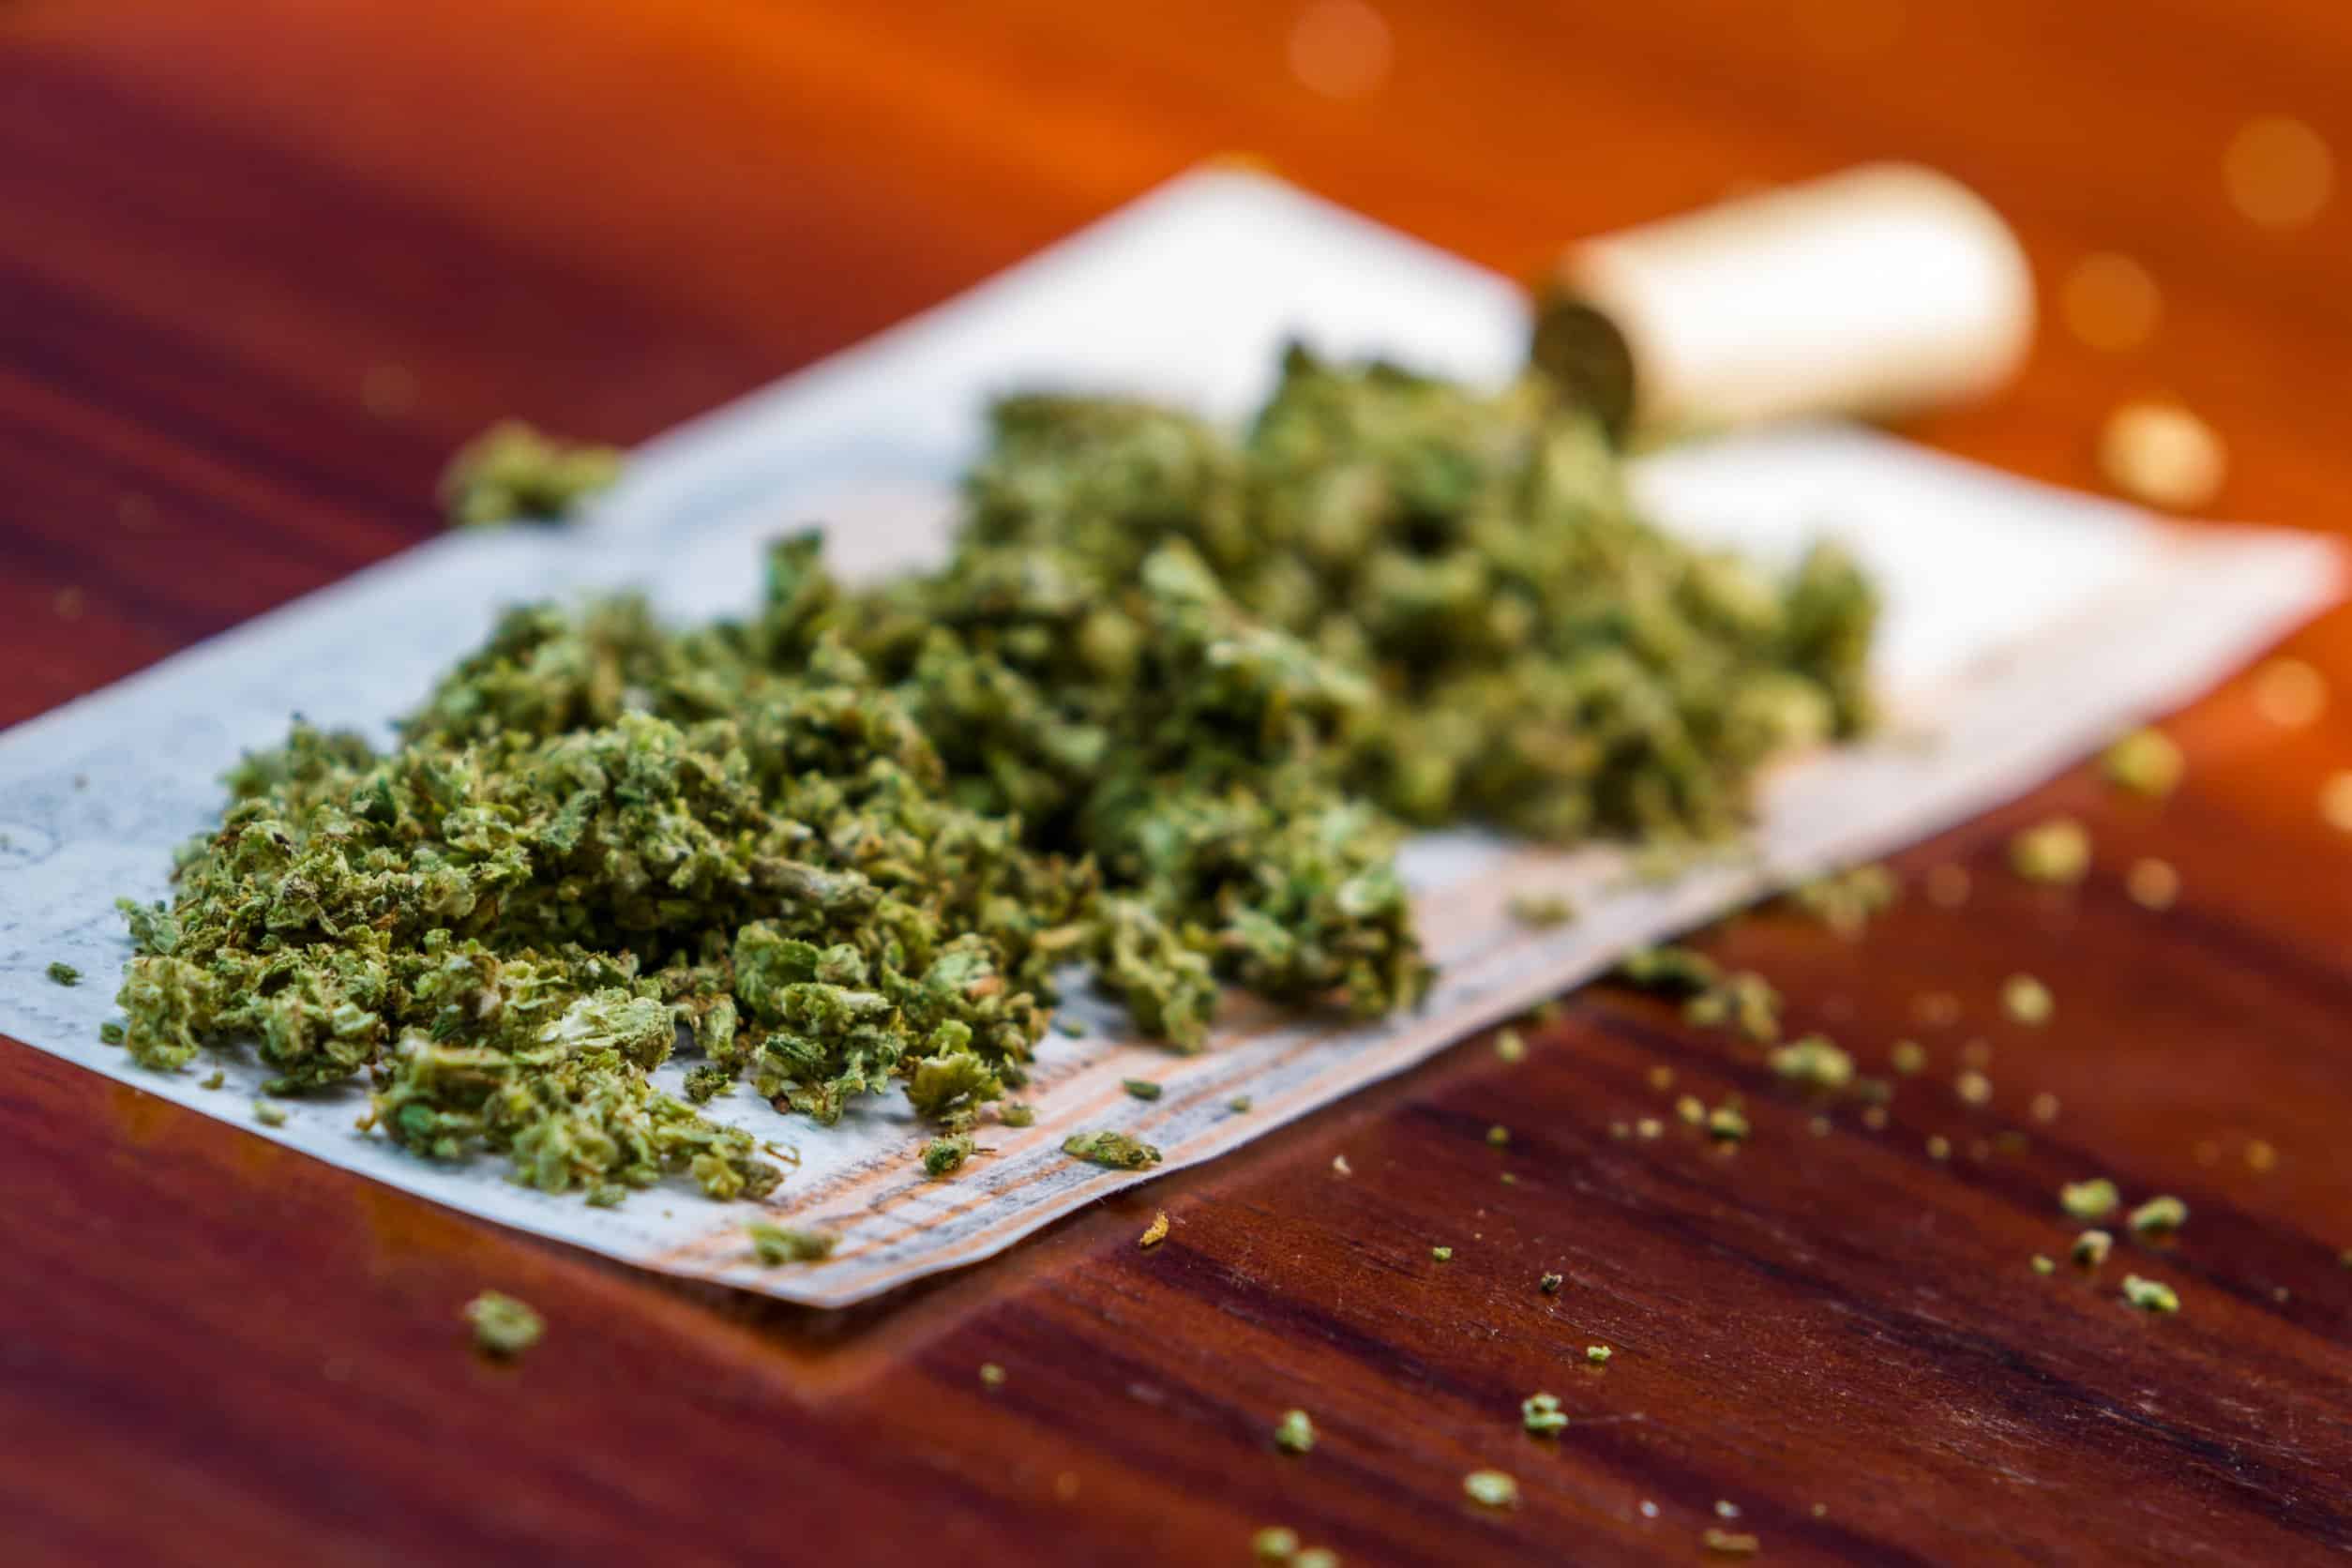 Where Can You Consume Marijuana in Colorado?